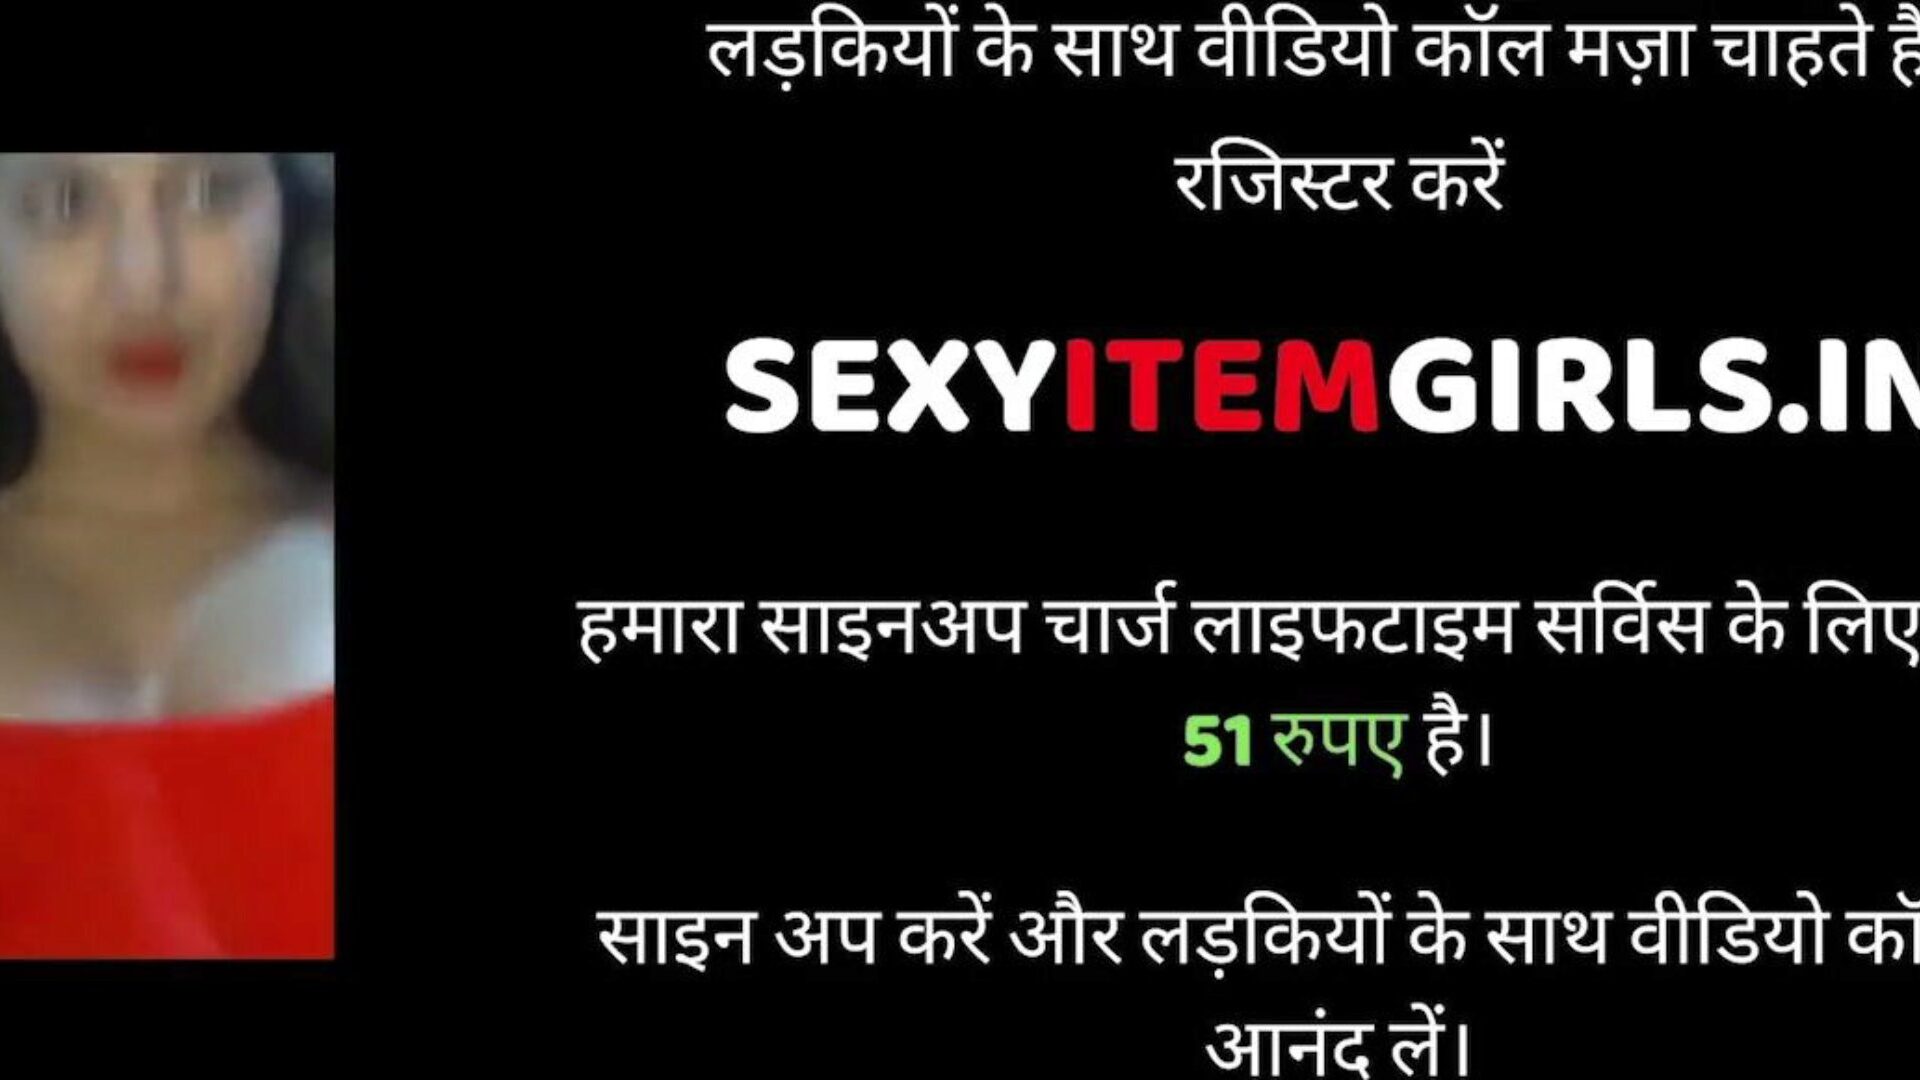 sex s indickým manželem a manželkou, porno xnxx zdarma 95: xhamster sledovat video o sexu s indickým manželem a manželkou na xhamsteru, nejtučnější stránce s hrbatými trubkami s množstvím bezplatného sexu xnxx, hardcore a sperma v kundičkách pornografické filmy